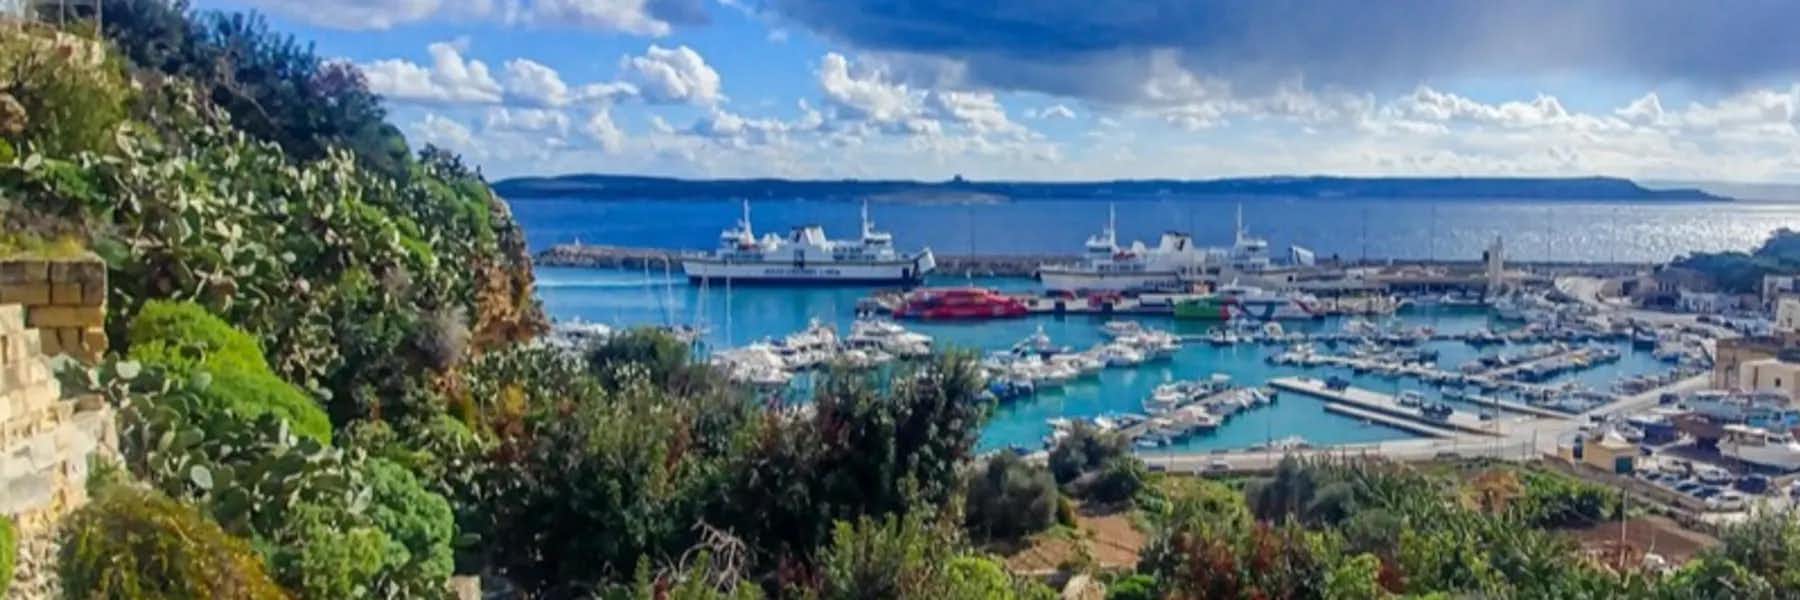 Gozo’s Mgarr Harbor. 